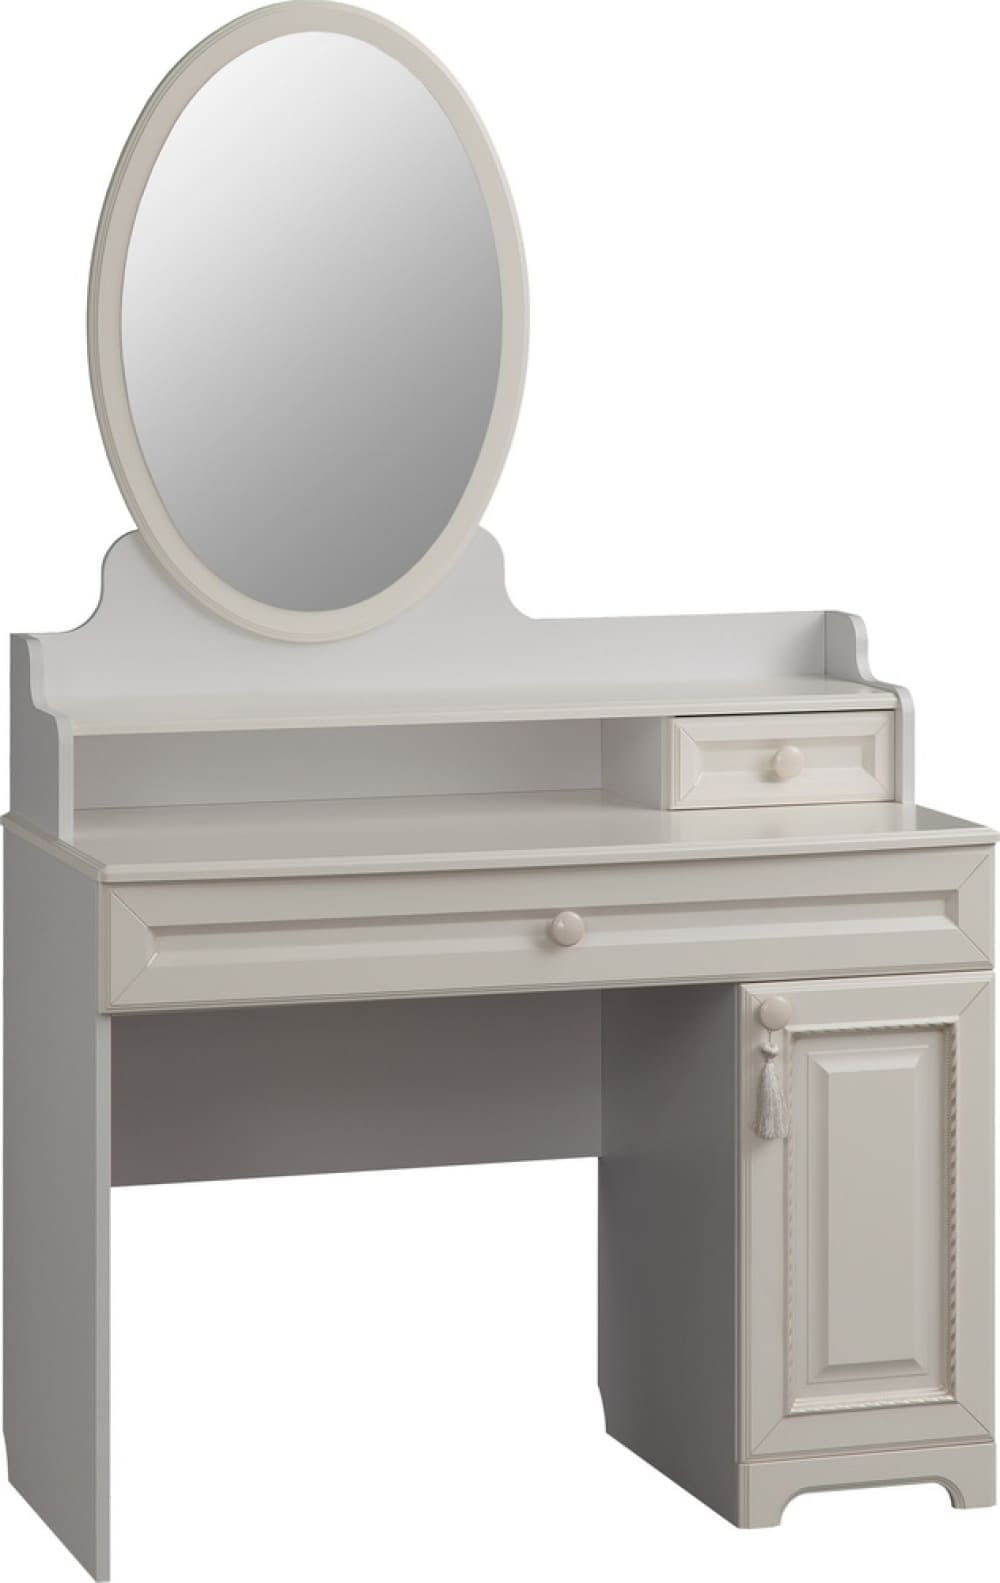 туалетный столик с зеркалом от производителя